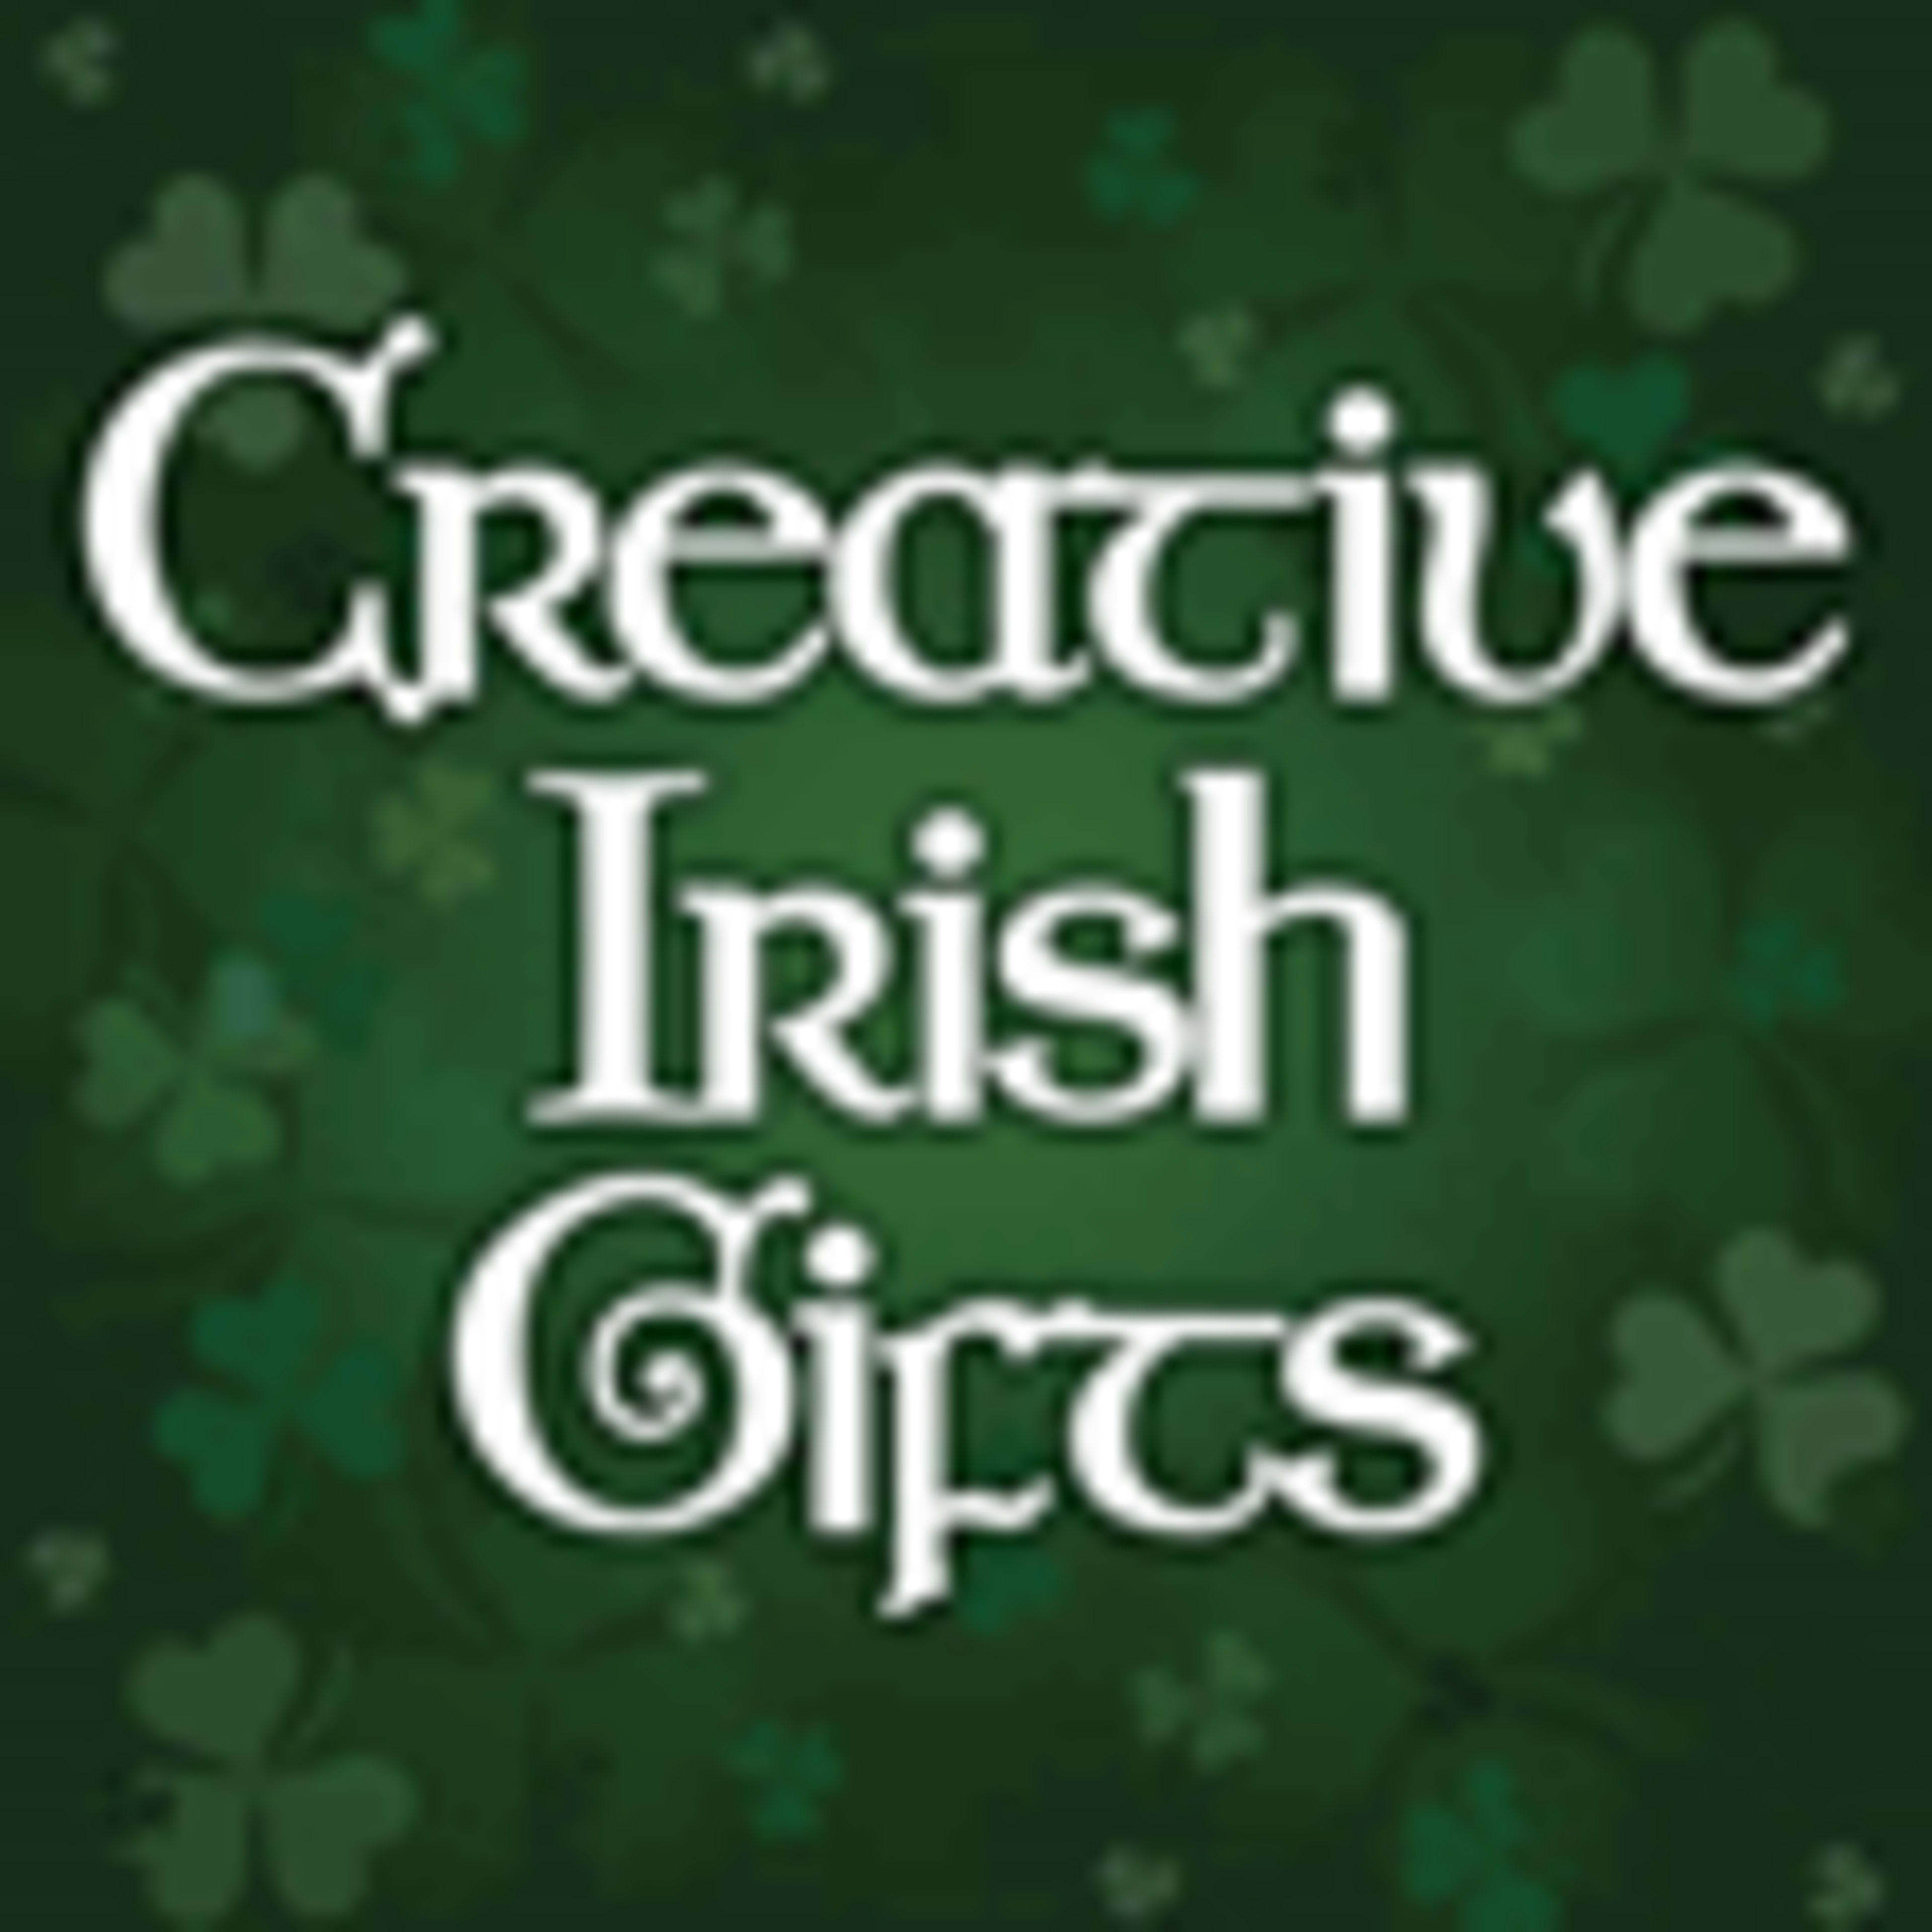 Creative Irish GiftsCode